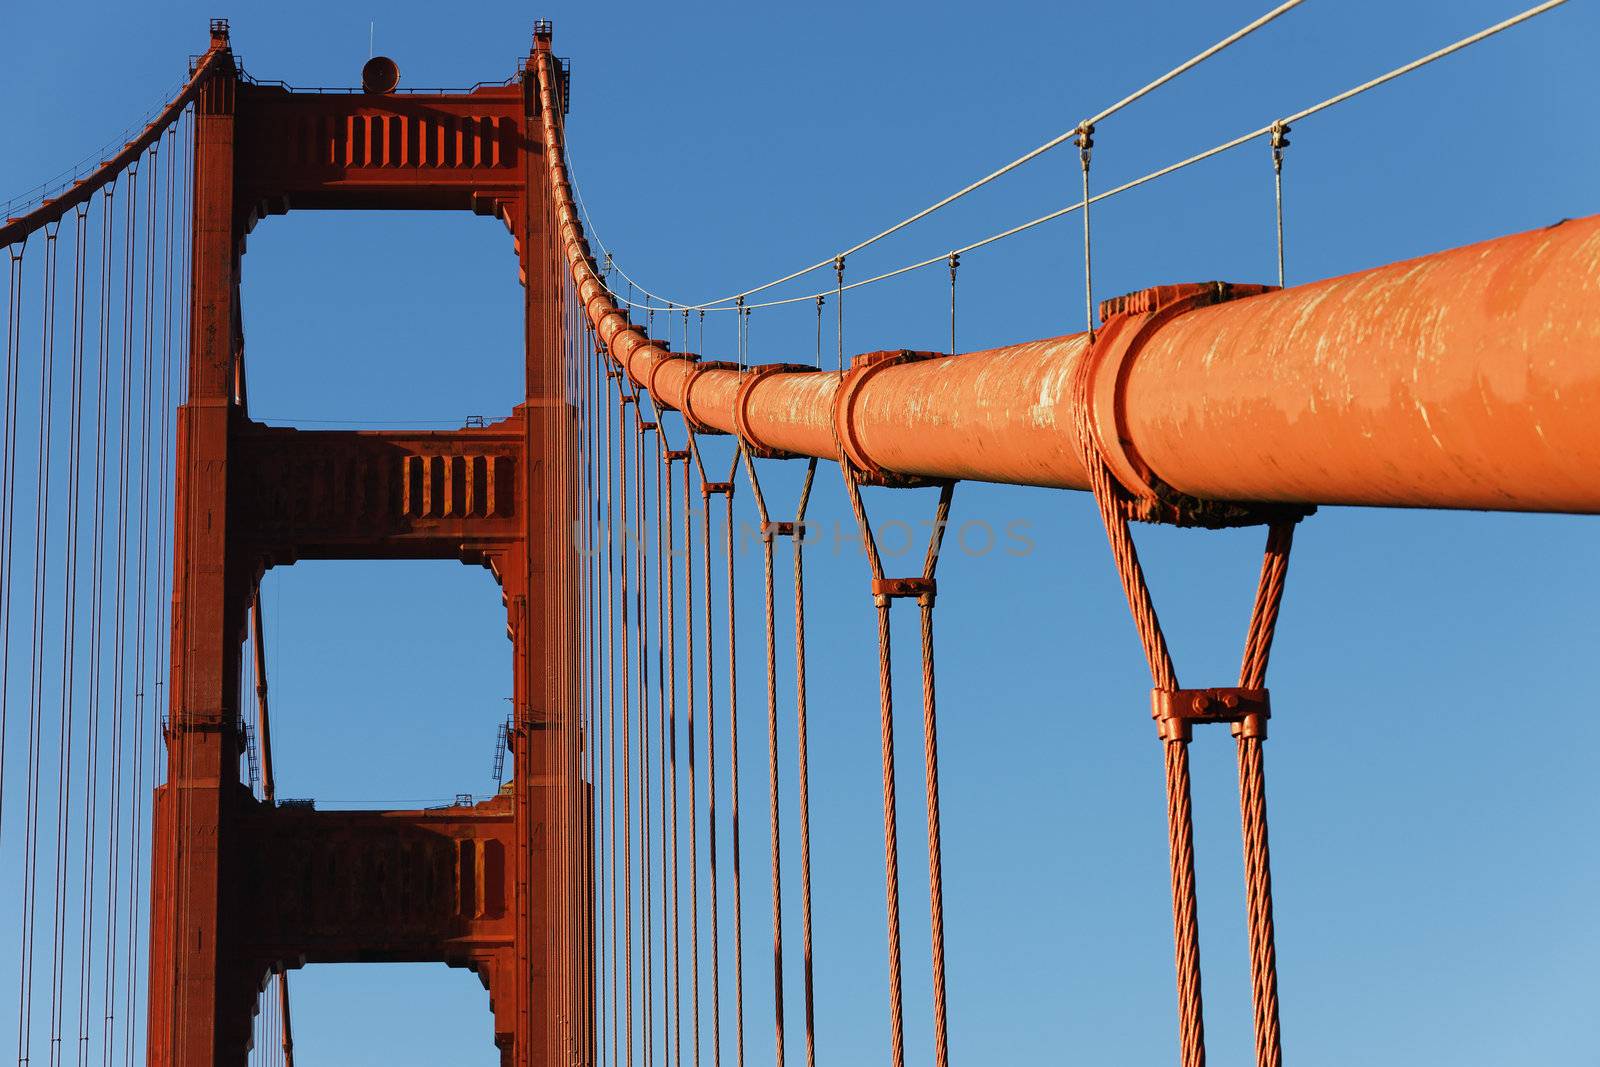 Part of famous Golden Gate Bridge, San Francisco